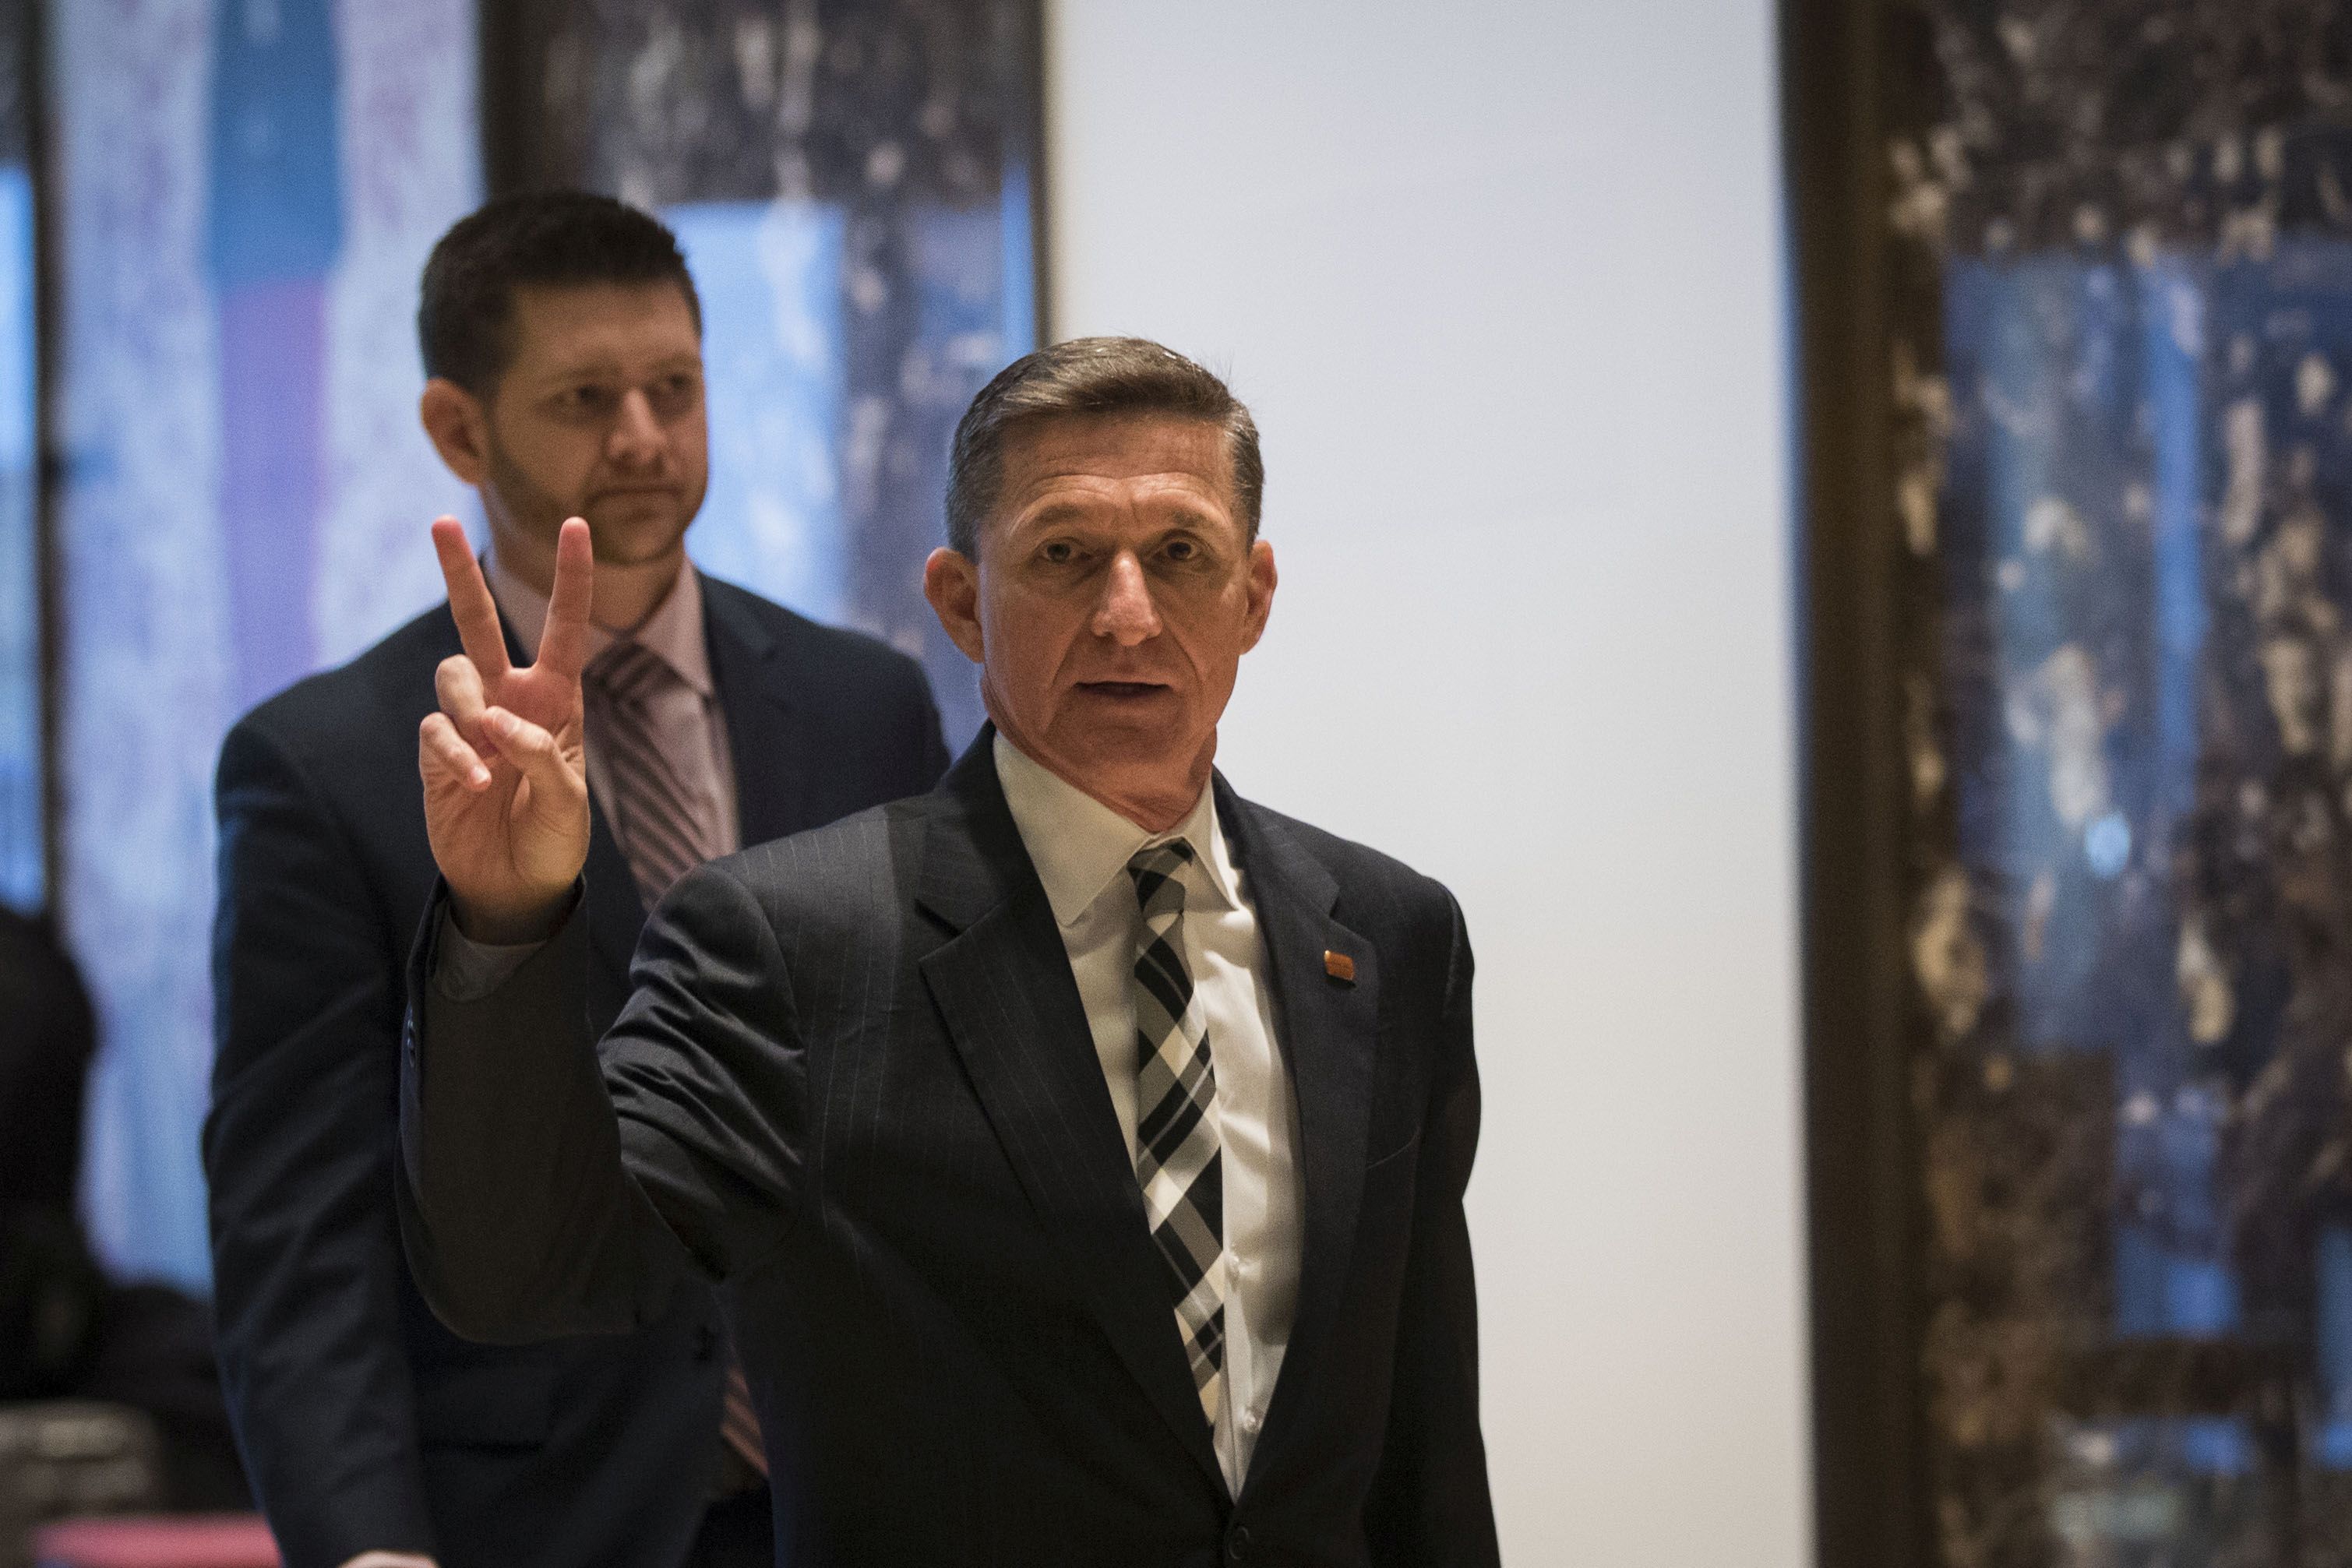 Lemondott Trump nemzetbiztonsági tanácsadója, Michael Flynn